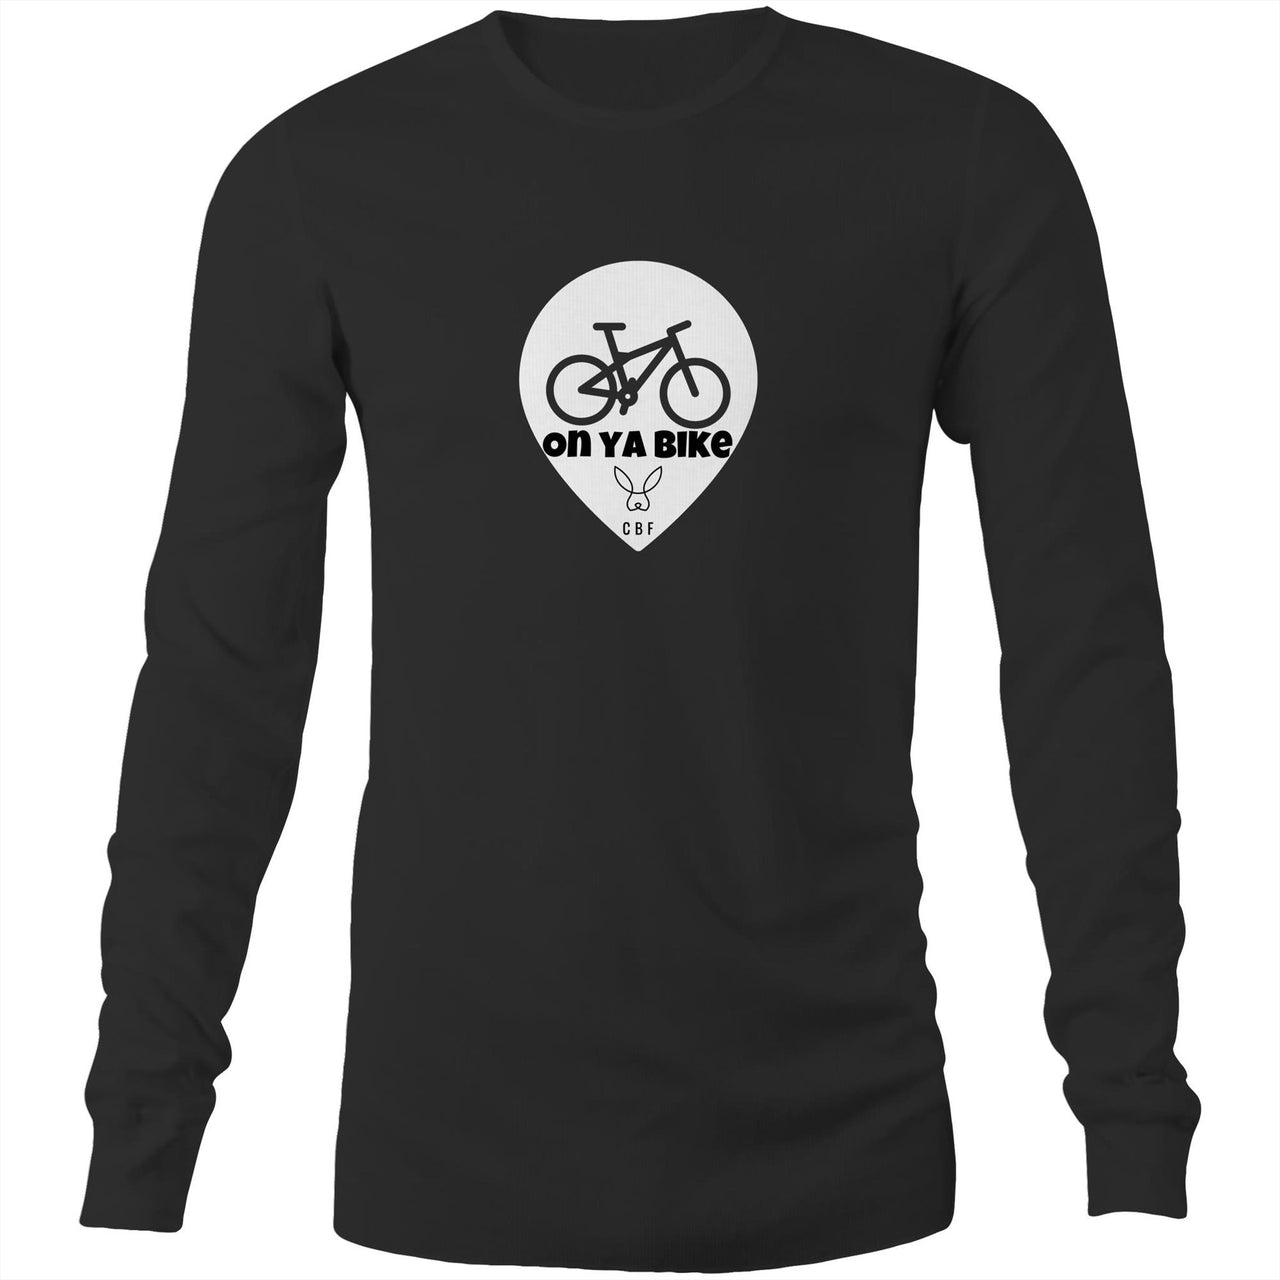 On Ya Bike Long Sleeve T-Shirt in Black